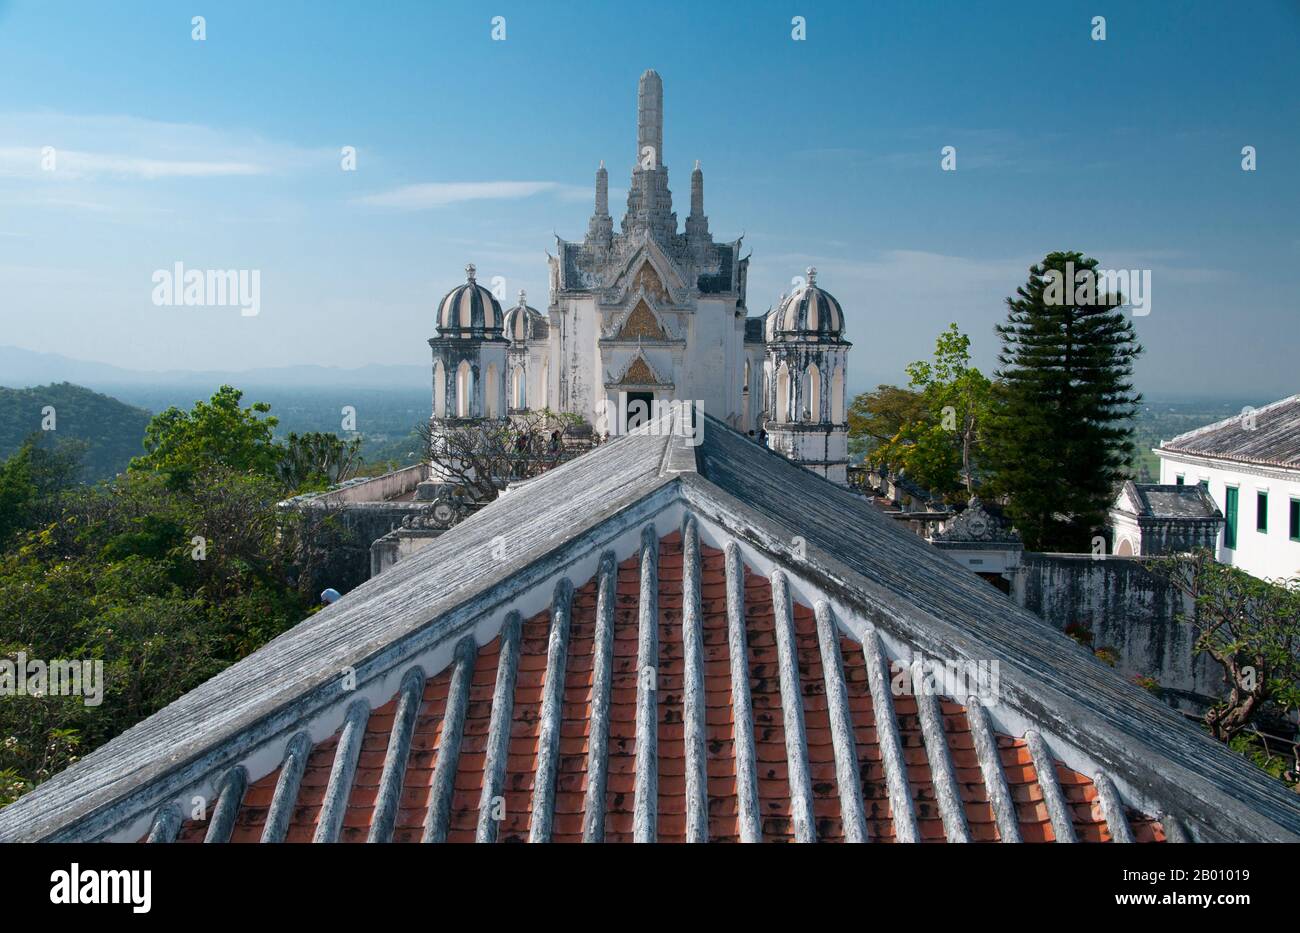 Thailandia: Complesso del palazzo, Khao Wang e Phra Nakhon Khiri Parco storico, Phetchaburi. Phra Nakhon Khiri è un parco storico situato su una collina che domina la città di Phetchaburi. Il nome Phra Nakhon Khiri significa collina della Città Santa, ma la gente del posto lo conosce meglio come Khao Wang, che significa collina con palazzo. L'intero complesso è stato costruito come un palazzo estivo dal re Mongkut, con la costruzione terminata nel 1860. Foto Stock